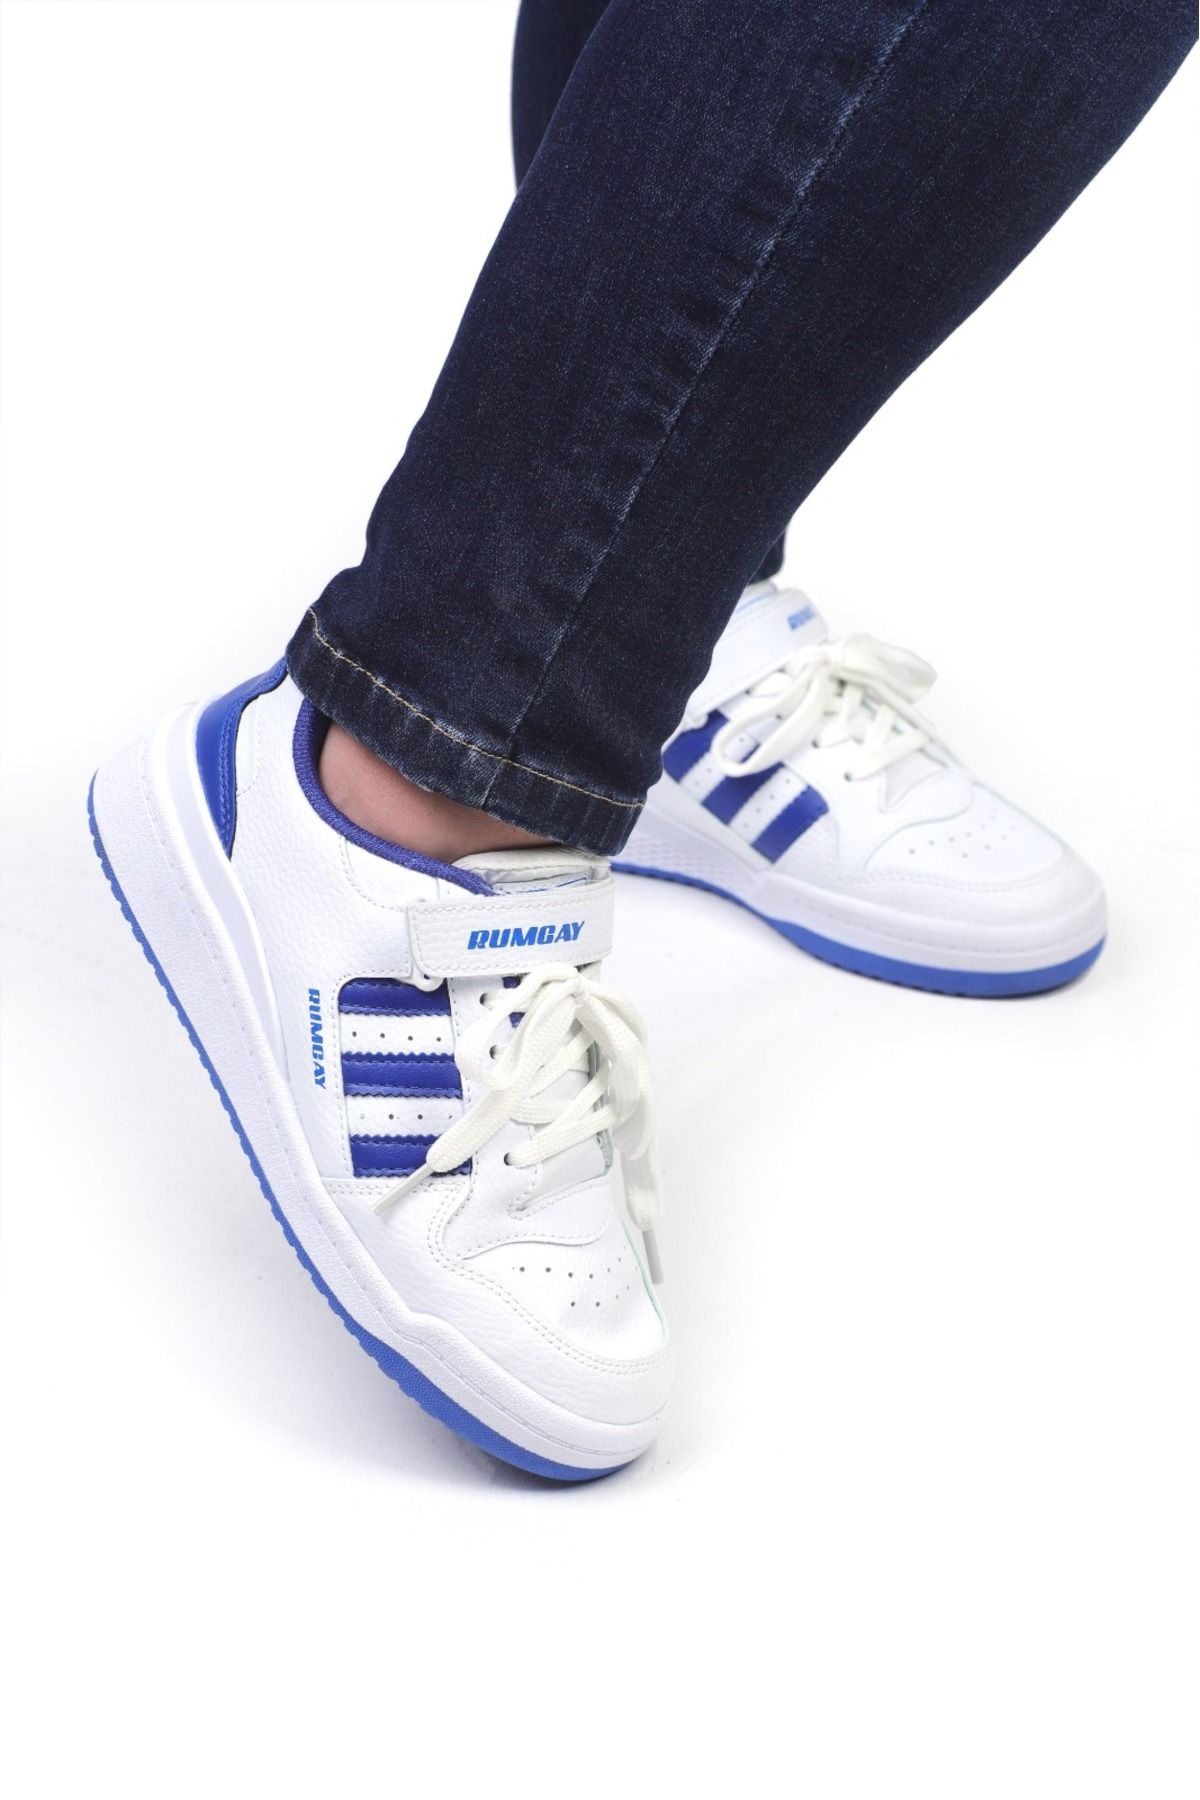 rumgay Beyaz Mavi Cırtlı 84 Low White Royal Blue Sneaker Ayakkabı